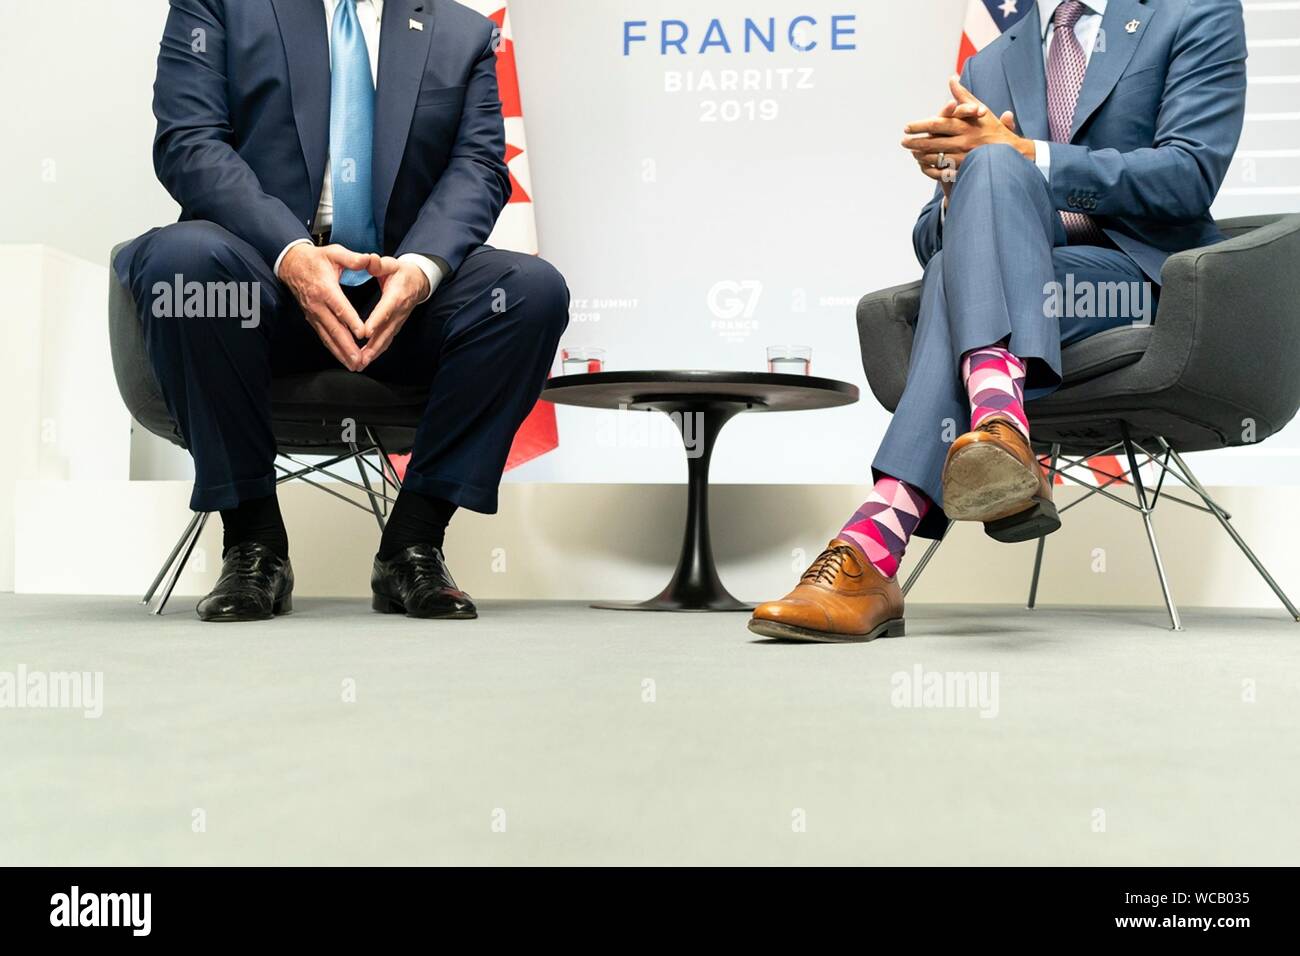 Reactor Tomar un riesgo Desmañado Un contraste en estilo mostrando los coloridos calcetines gastados por el  Primer Ministro canadiense Justin Trudeau, derecha y aquellos usados por el  Presidente de Estados Unidos, Donald Trump, antes de su reunión